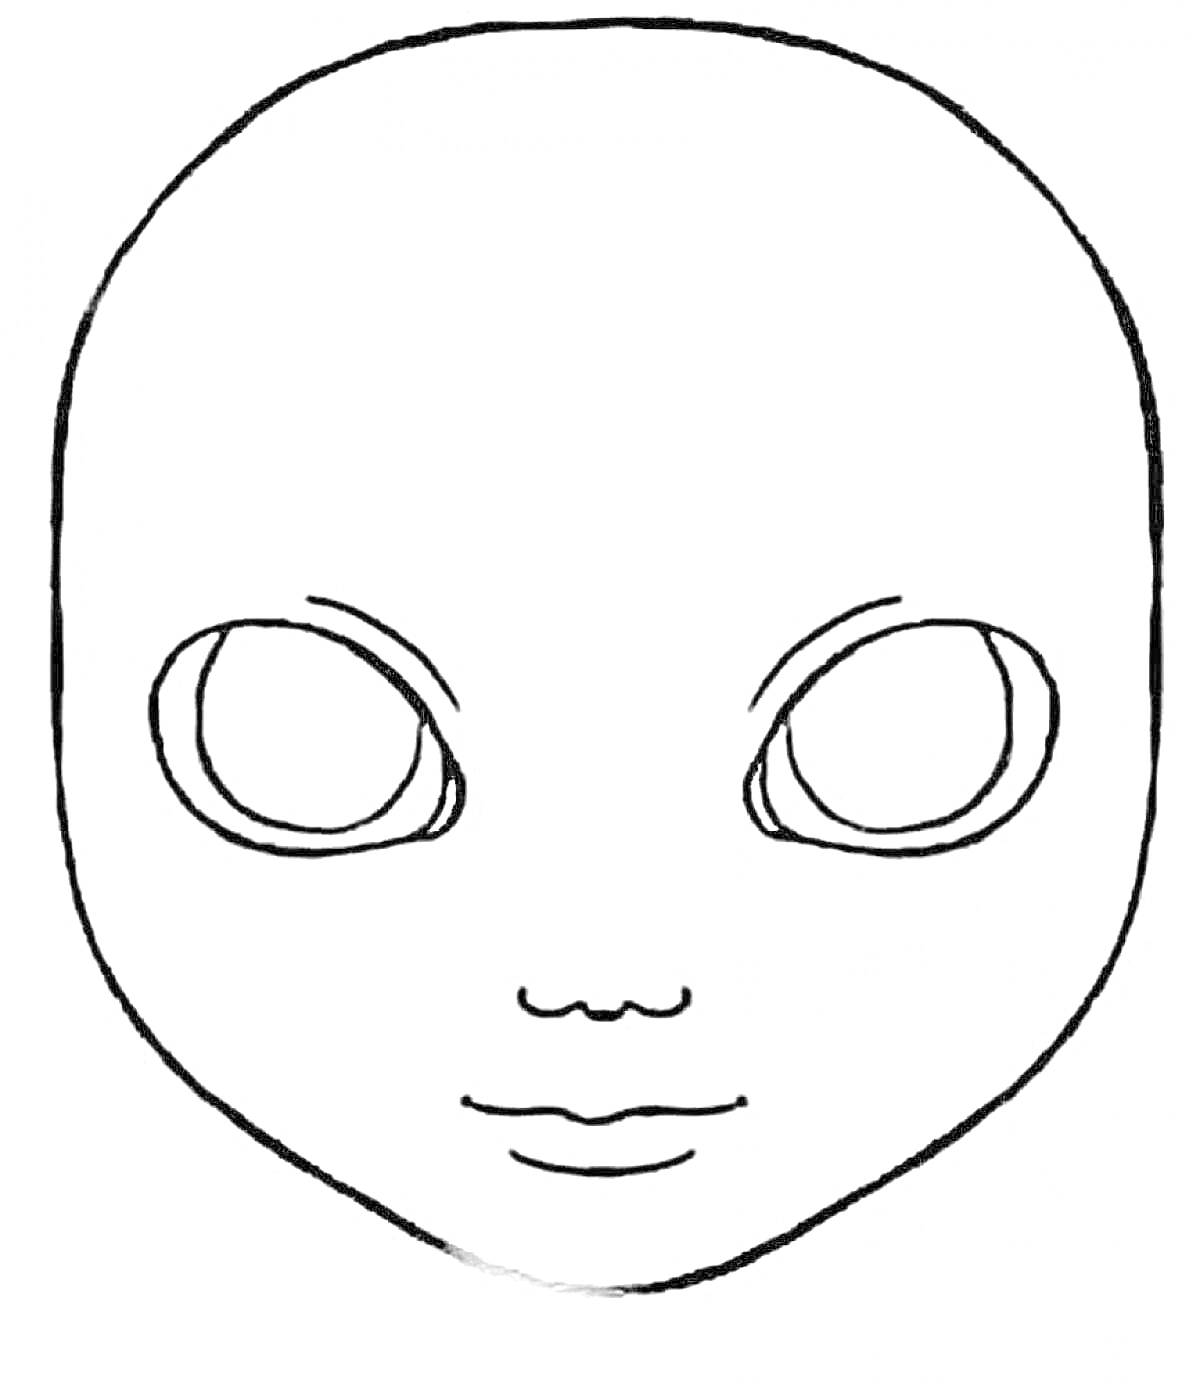 Раскраска Лицо куклы с большими круглыми глазами и контуром рта, без волос